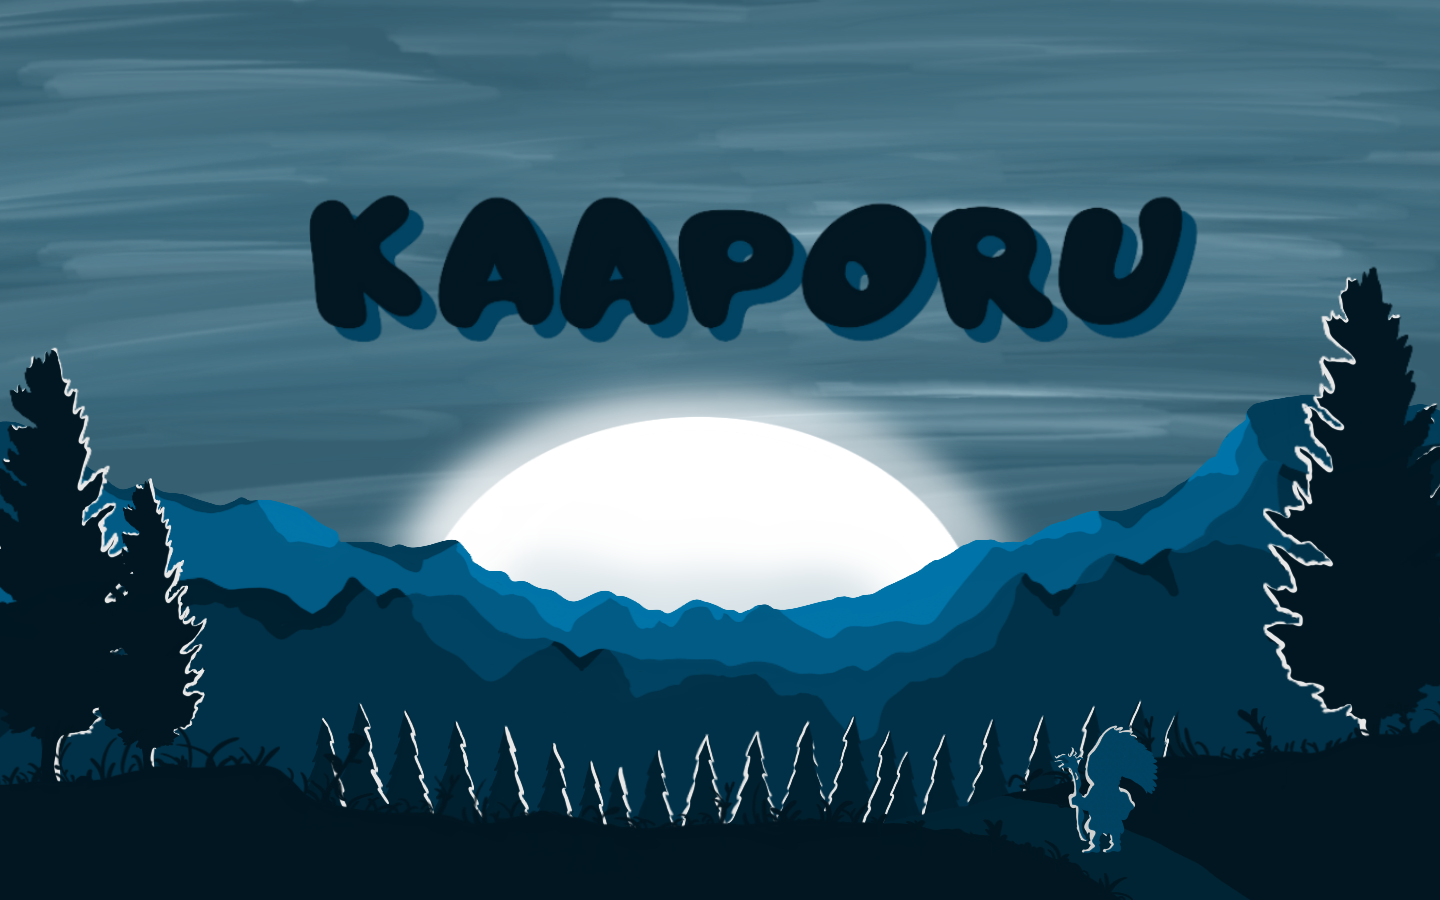 Kaaporu